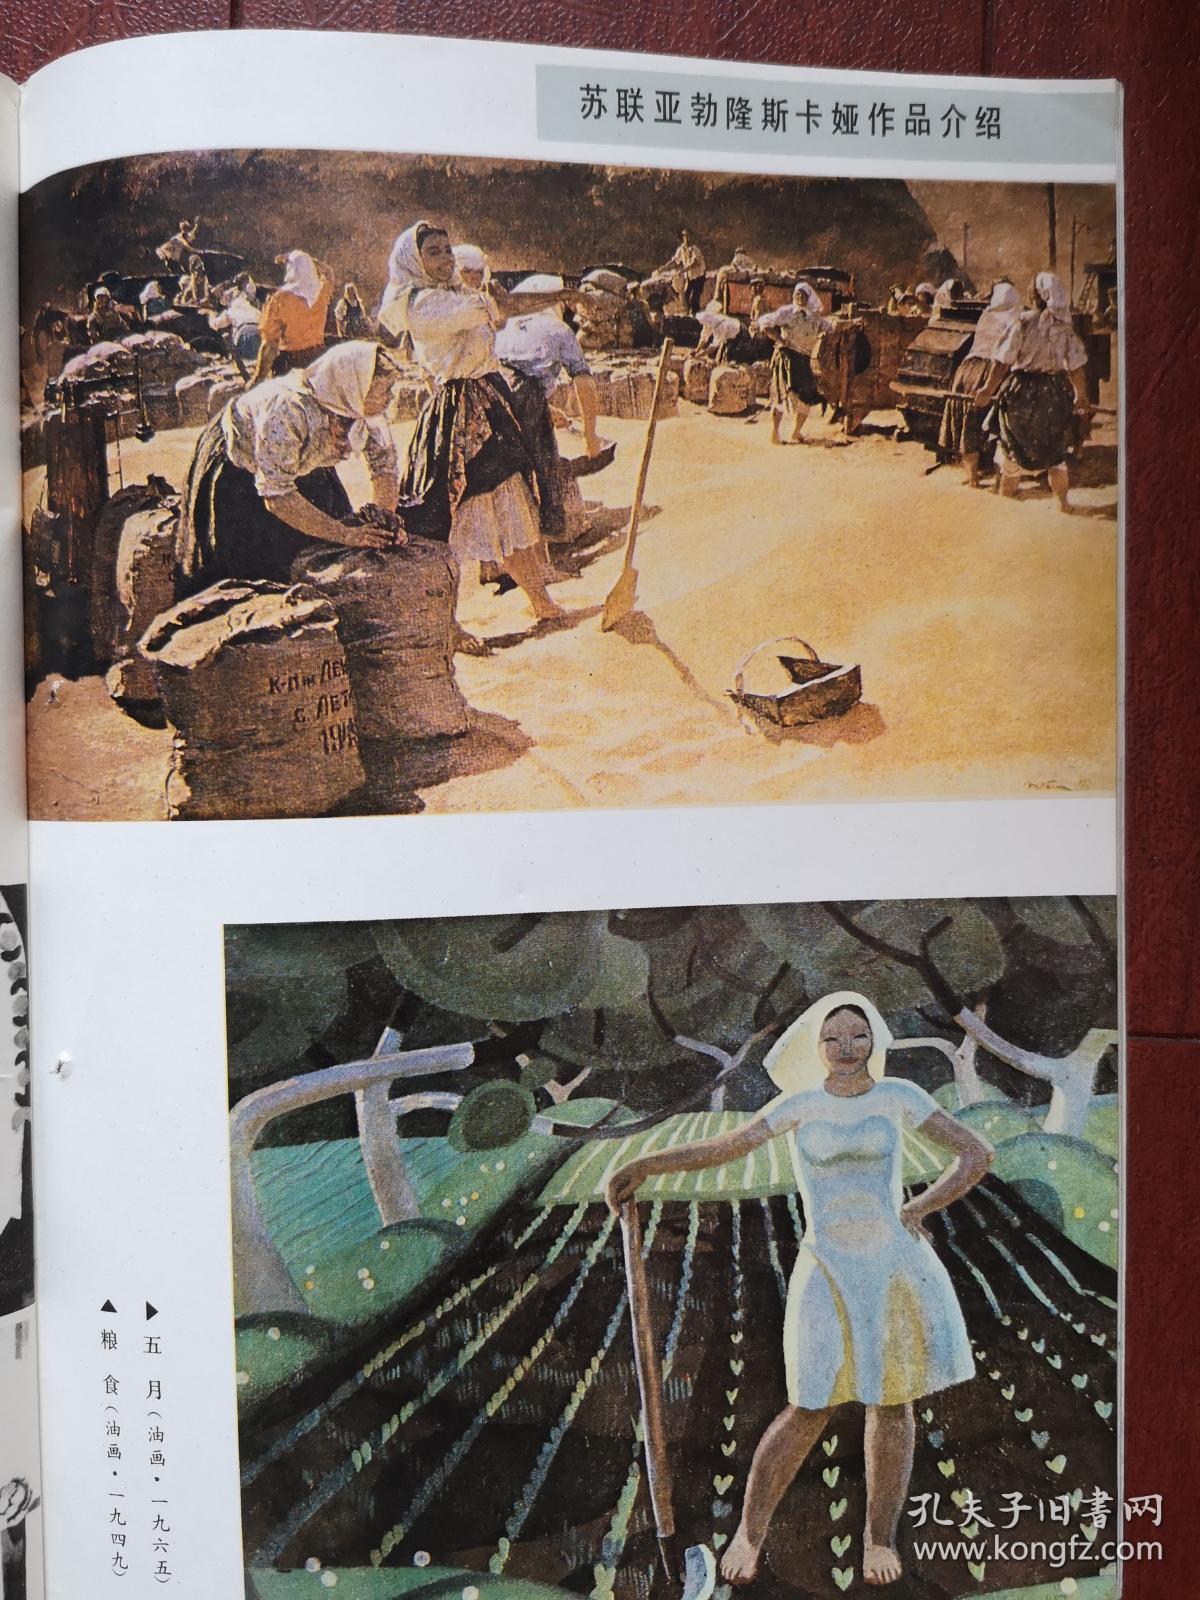 彩版美术插页（单张）苏联亚勃隆斯卡娅油画《粮食》《五月》《清风》《无名高地》《青春》